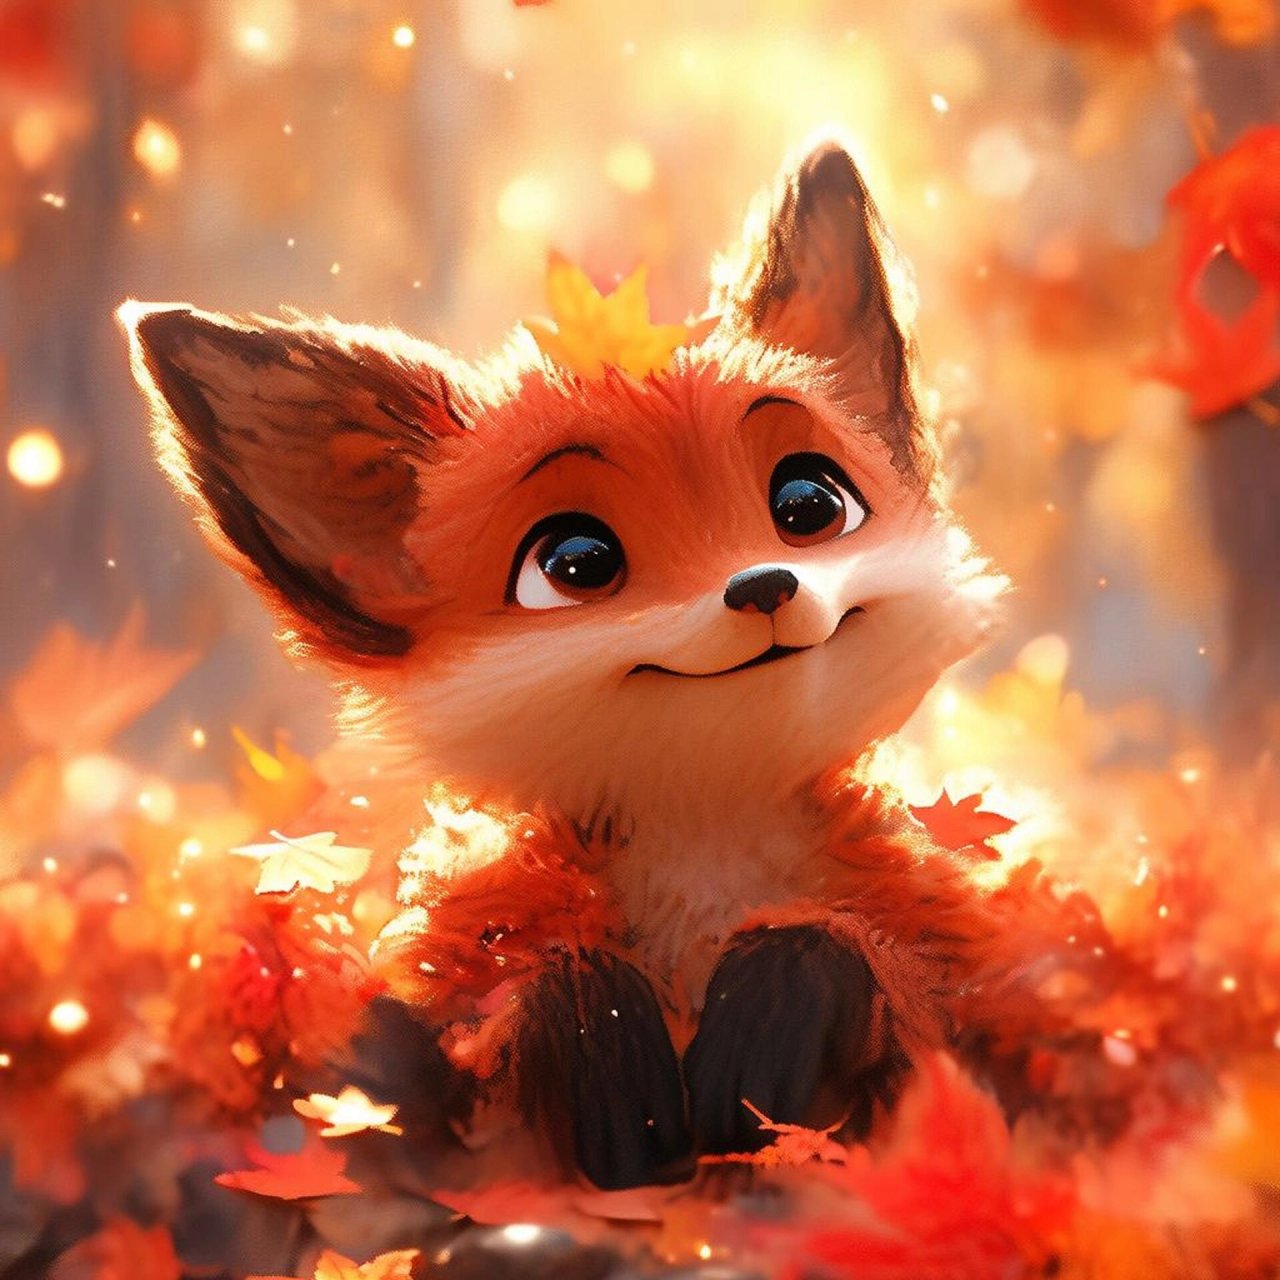 你们有没有超级可爱的小狐狸头像啊?而且,这个表情也很适合秋天呢!